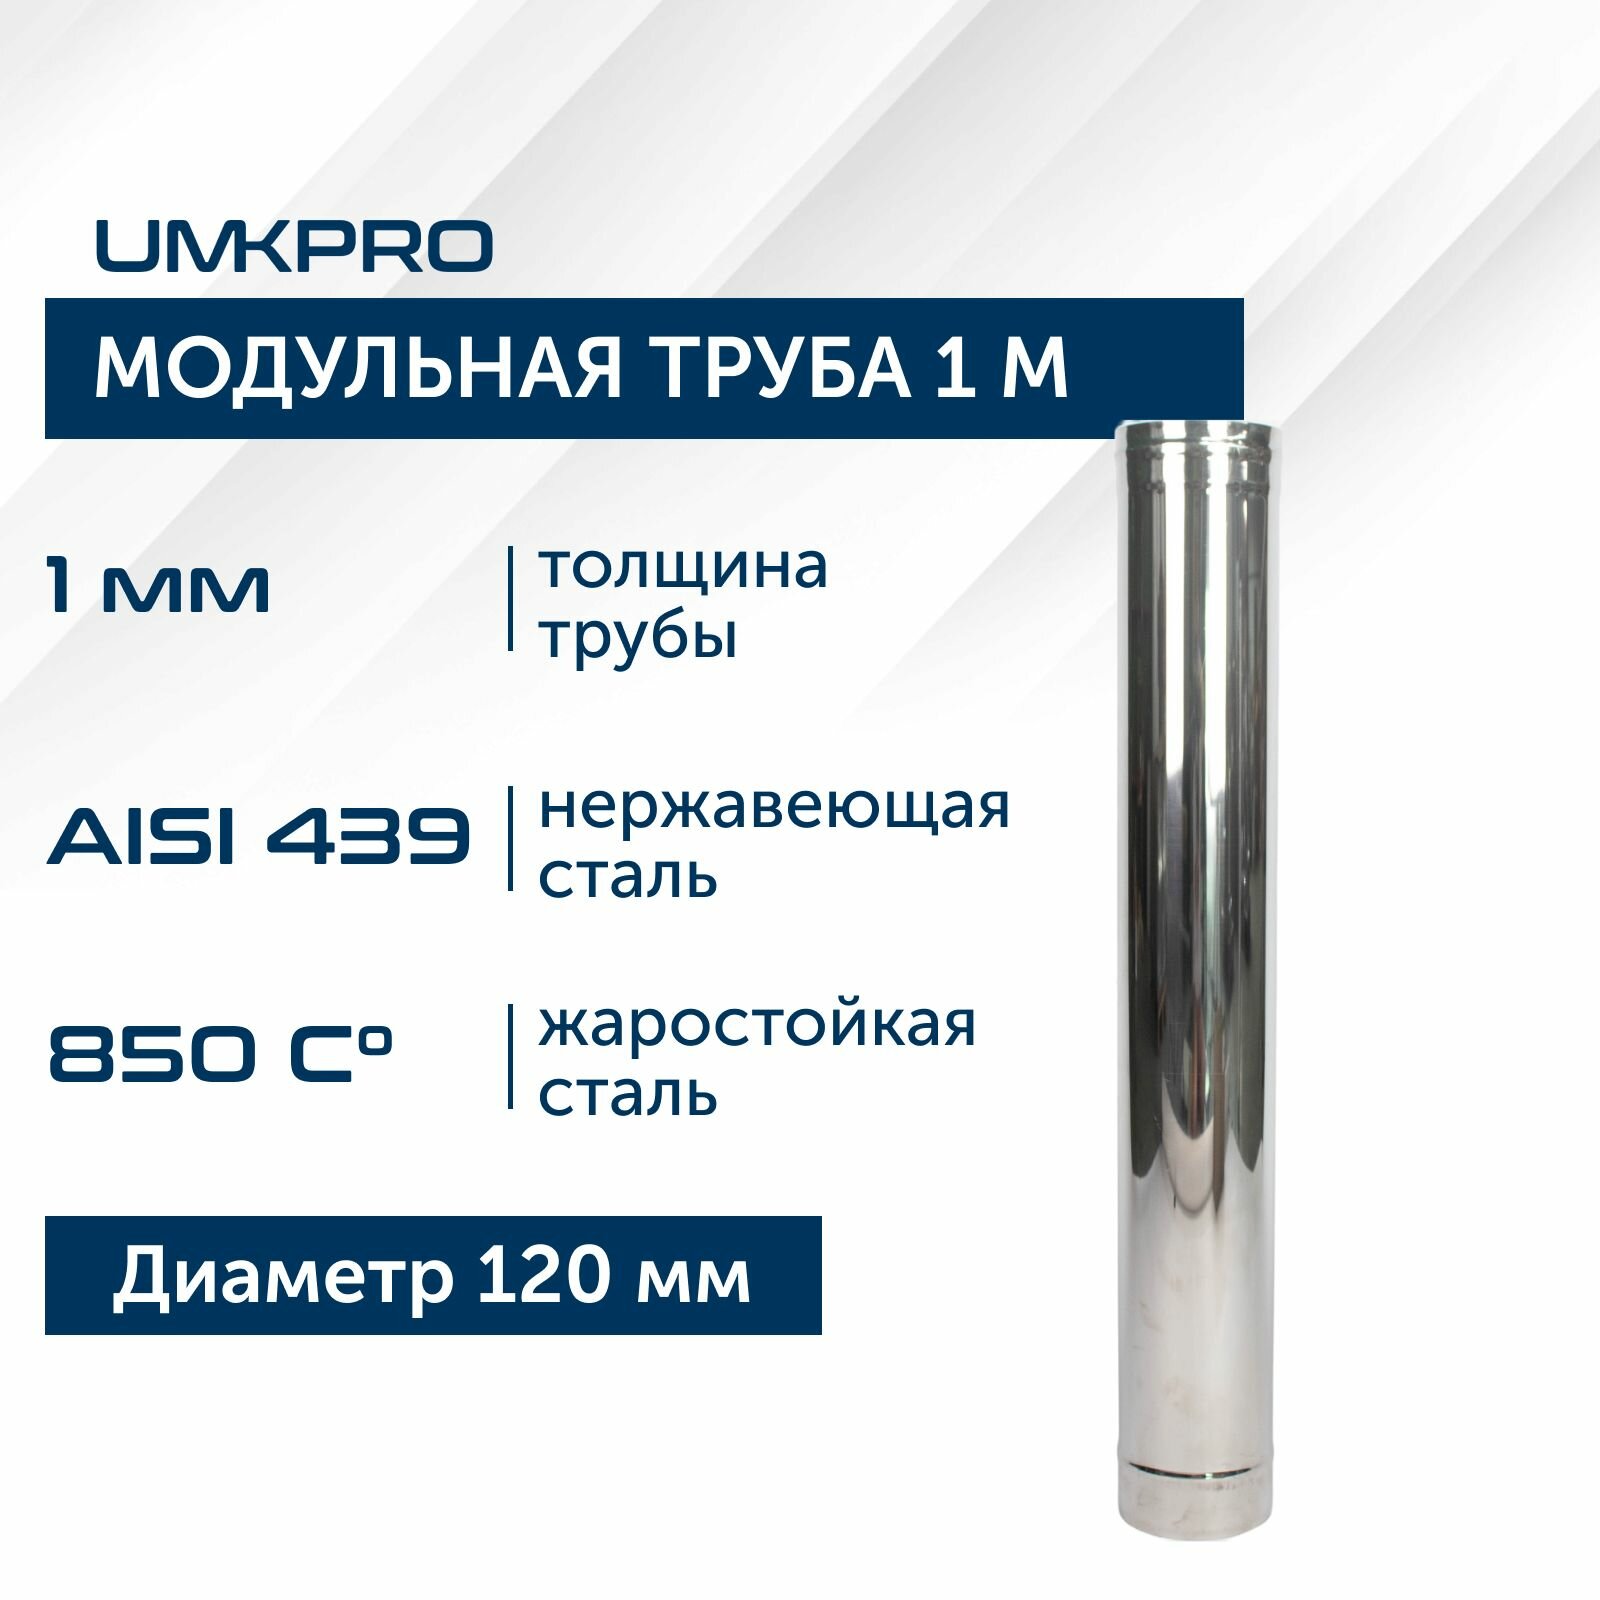 Труба модульная для дымохода 1 м UMKPRO D 120, AISI 439/1,0мм